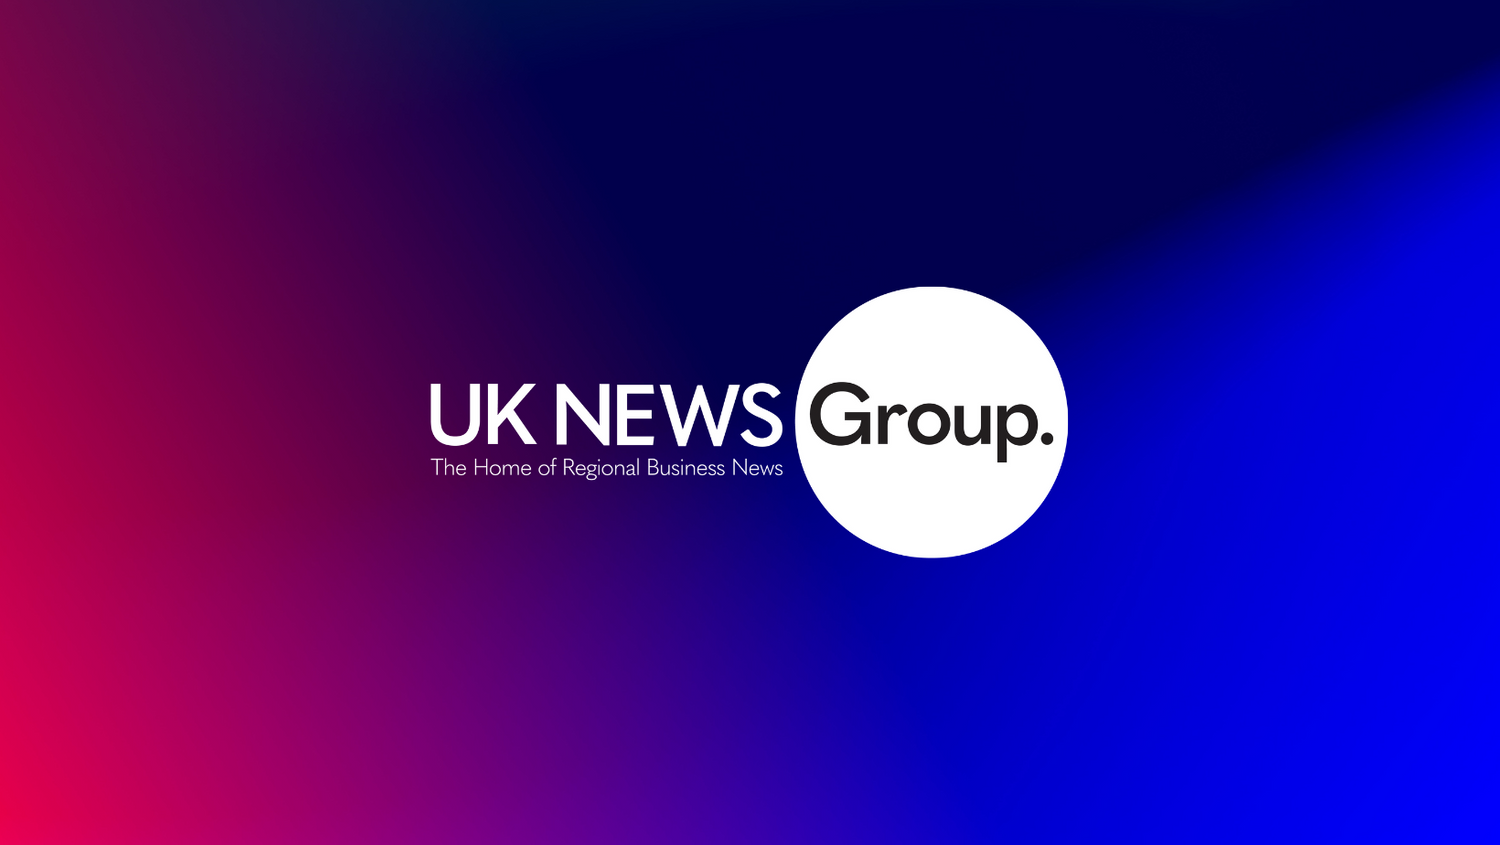 UK News Group